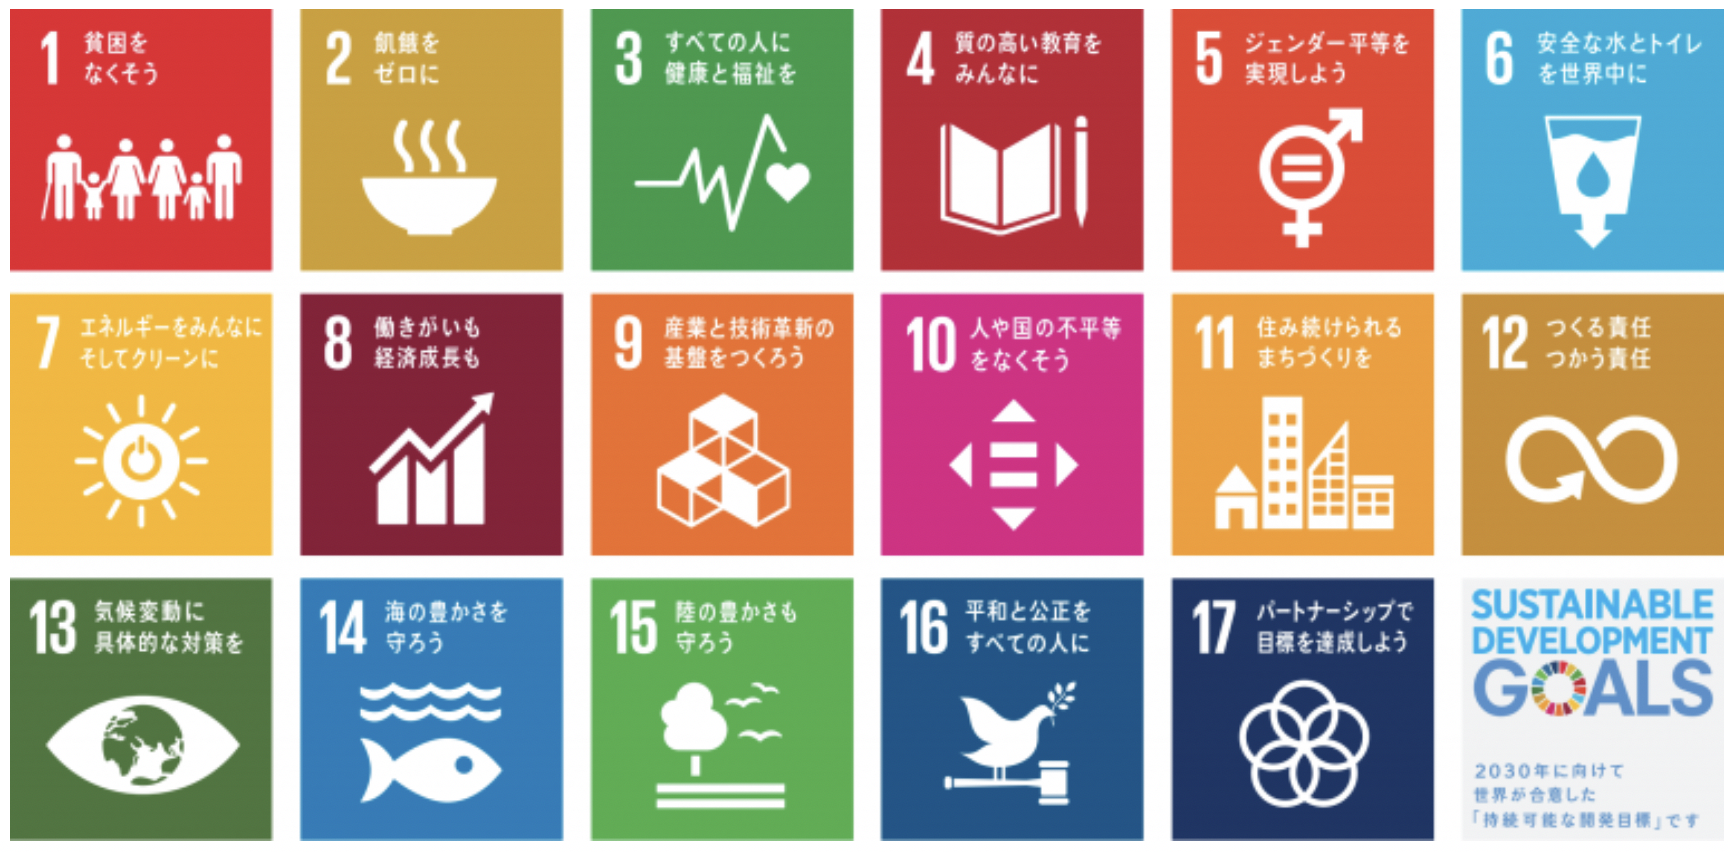 「【SDGs】渋沢栄一考 「逆境とは何か」」のアイキャッチ画像